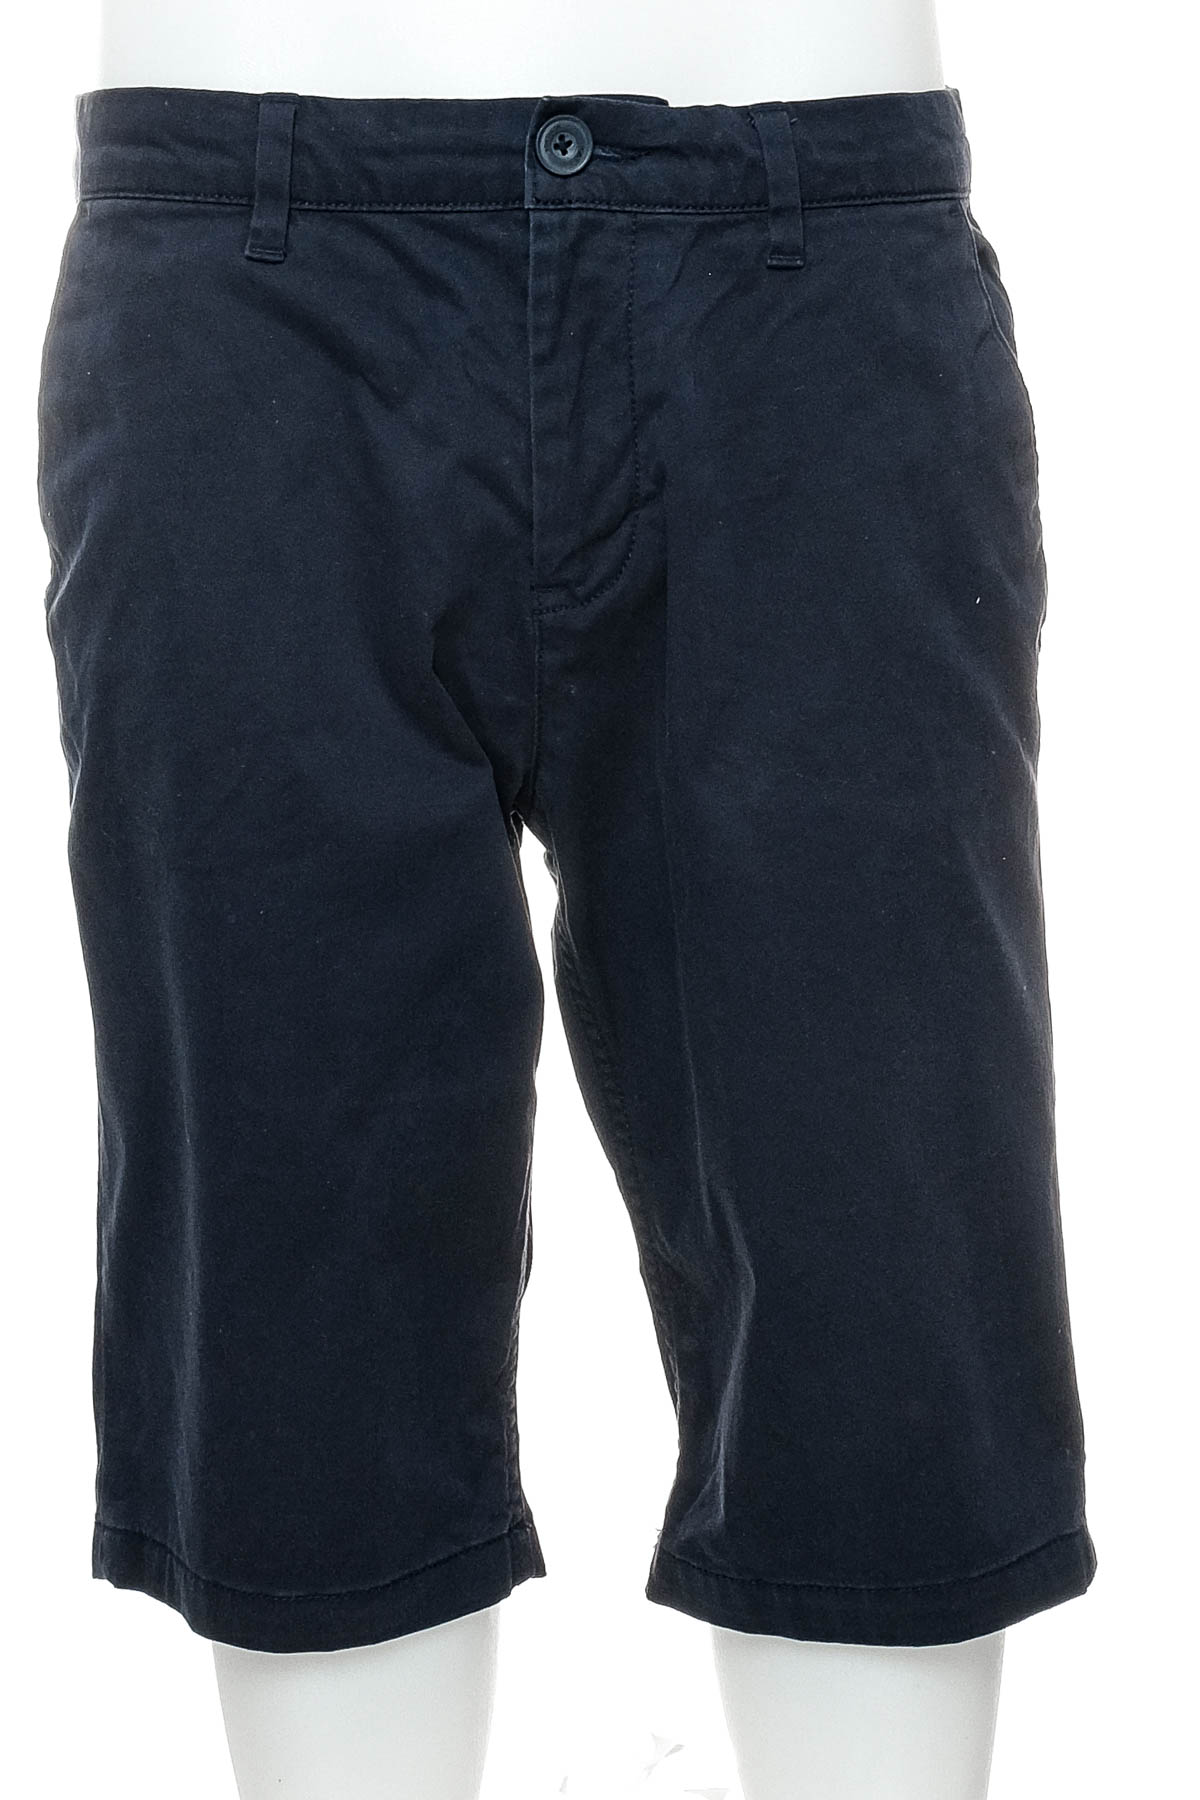 Pantaloni scurți bărbați - TOM TAILOR - 0